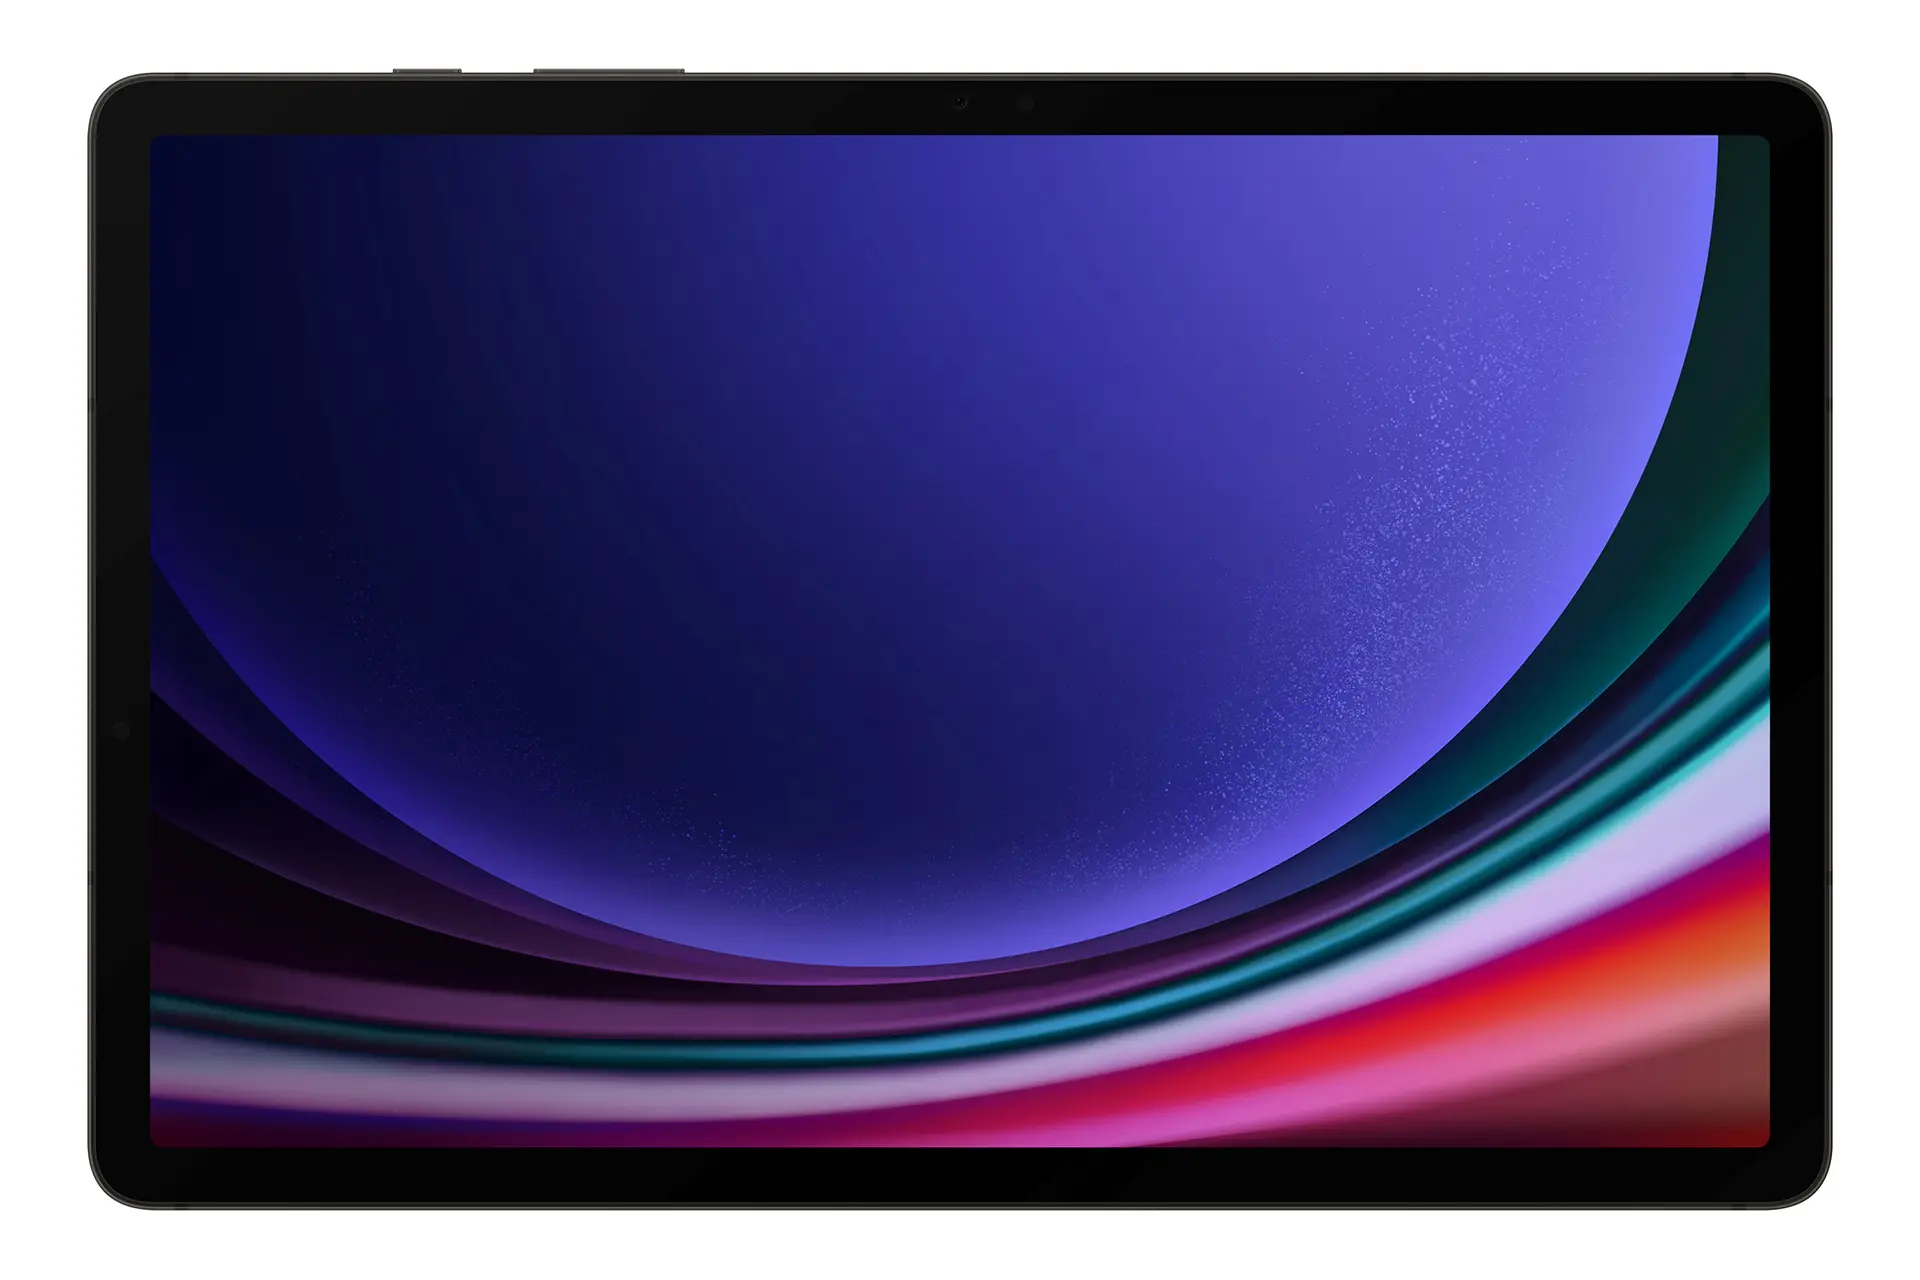 نمای رو به روی تبلت گلکسی تب اس 9 سامسونگ / Samsung Galaxy Tab S9 با نمایش دوربین سلفی و نمایش حاشیه های نمایشگر